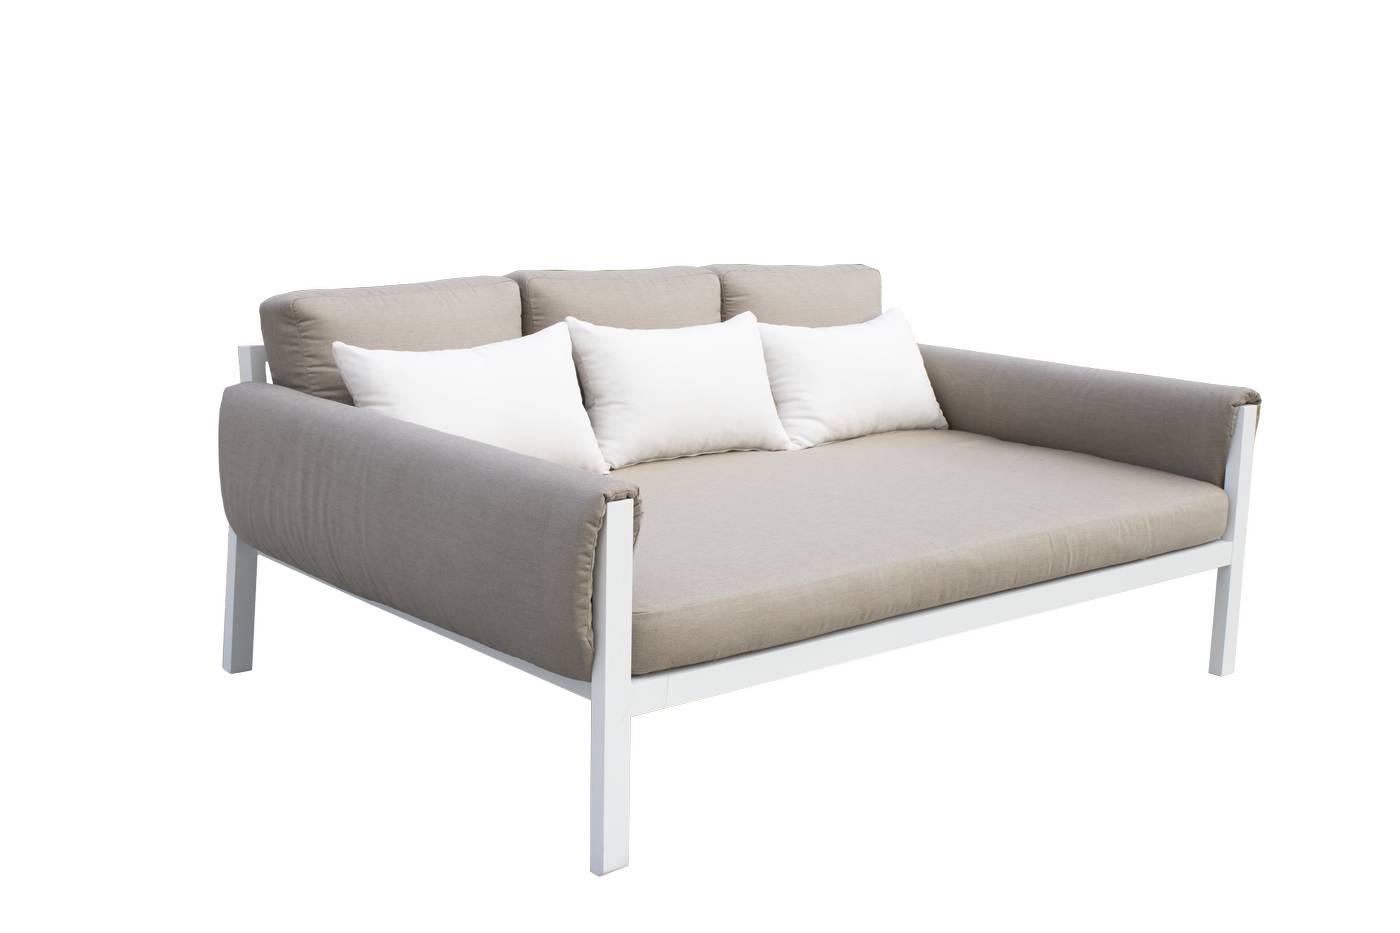 Set Sofá/Cama Arizona-100 - Conjunto aluminio con opción de cojines en los brazos: sofá/cama de 3 plazas + 2 sillones + 1 mesa de centro + 2 reposapiés. Color: blanco, antracita, marrón, champagne o plata.